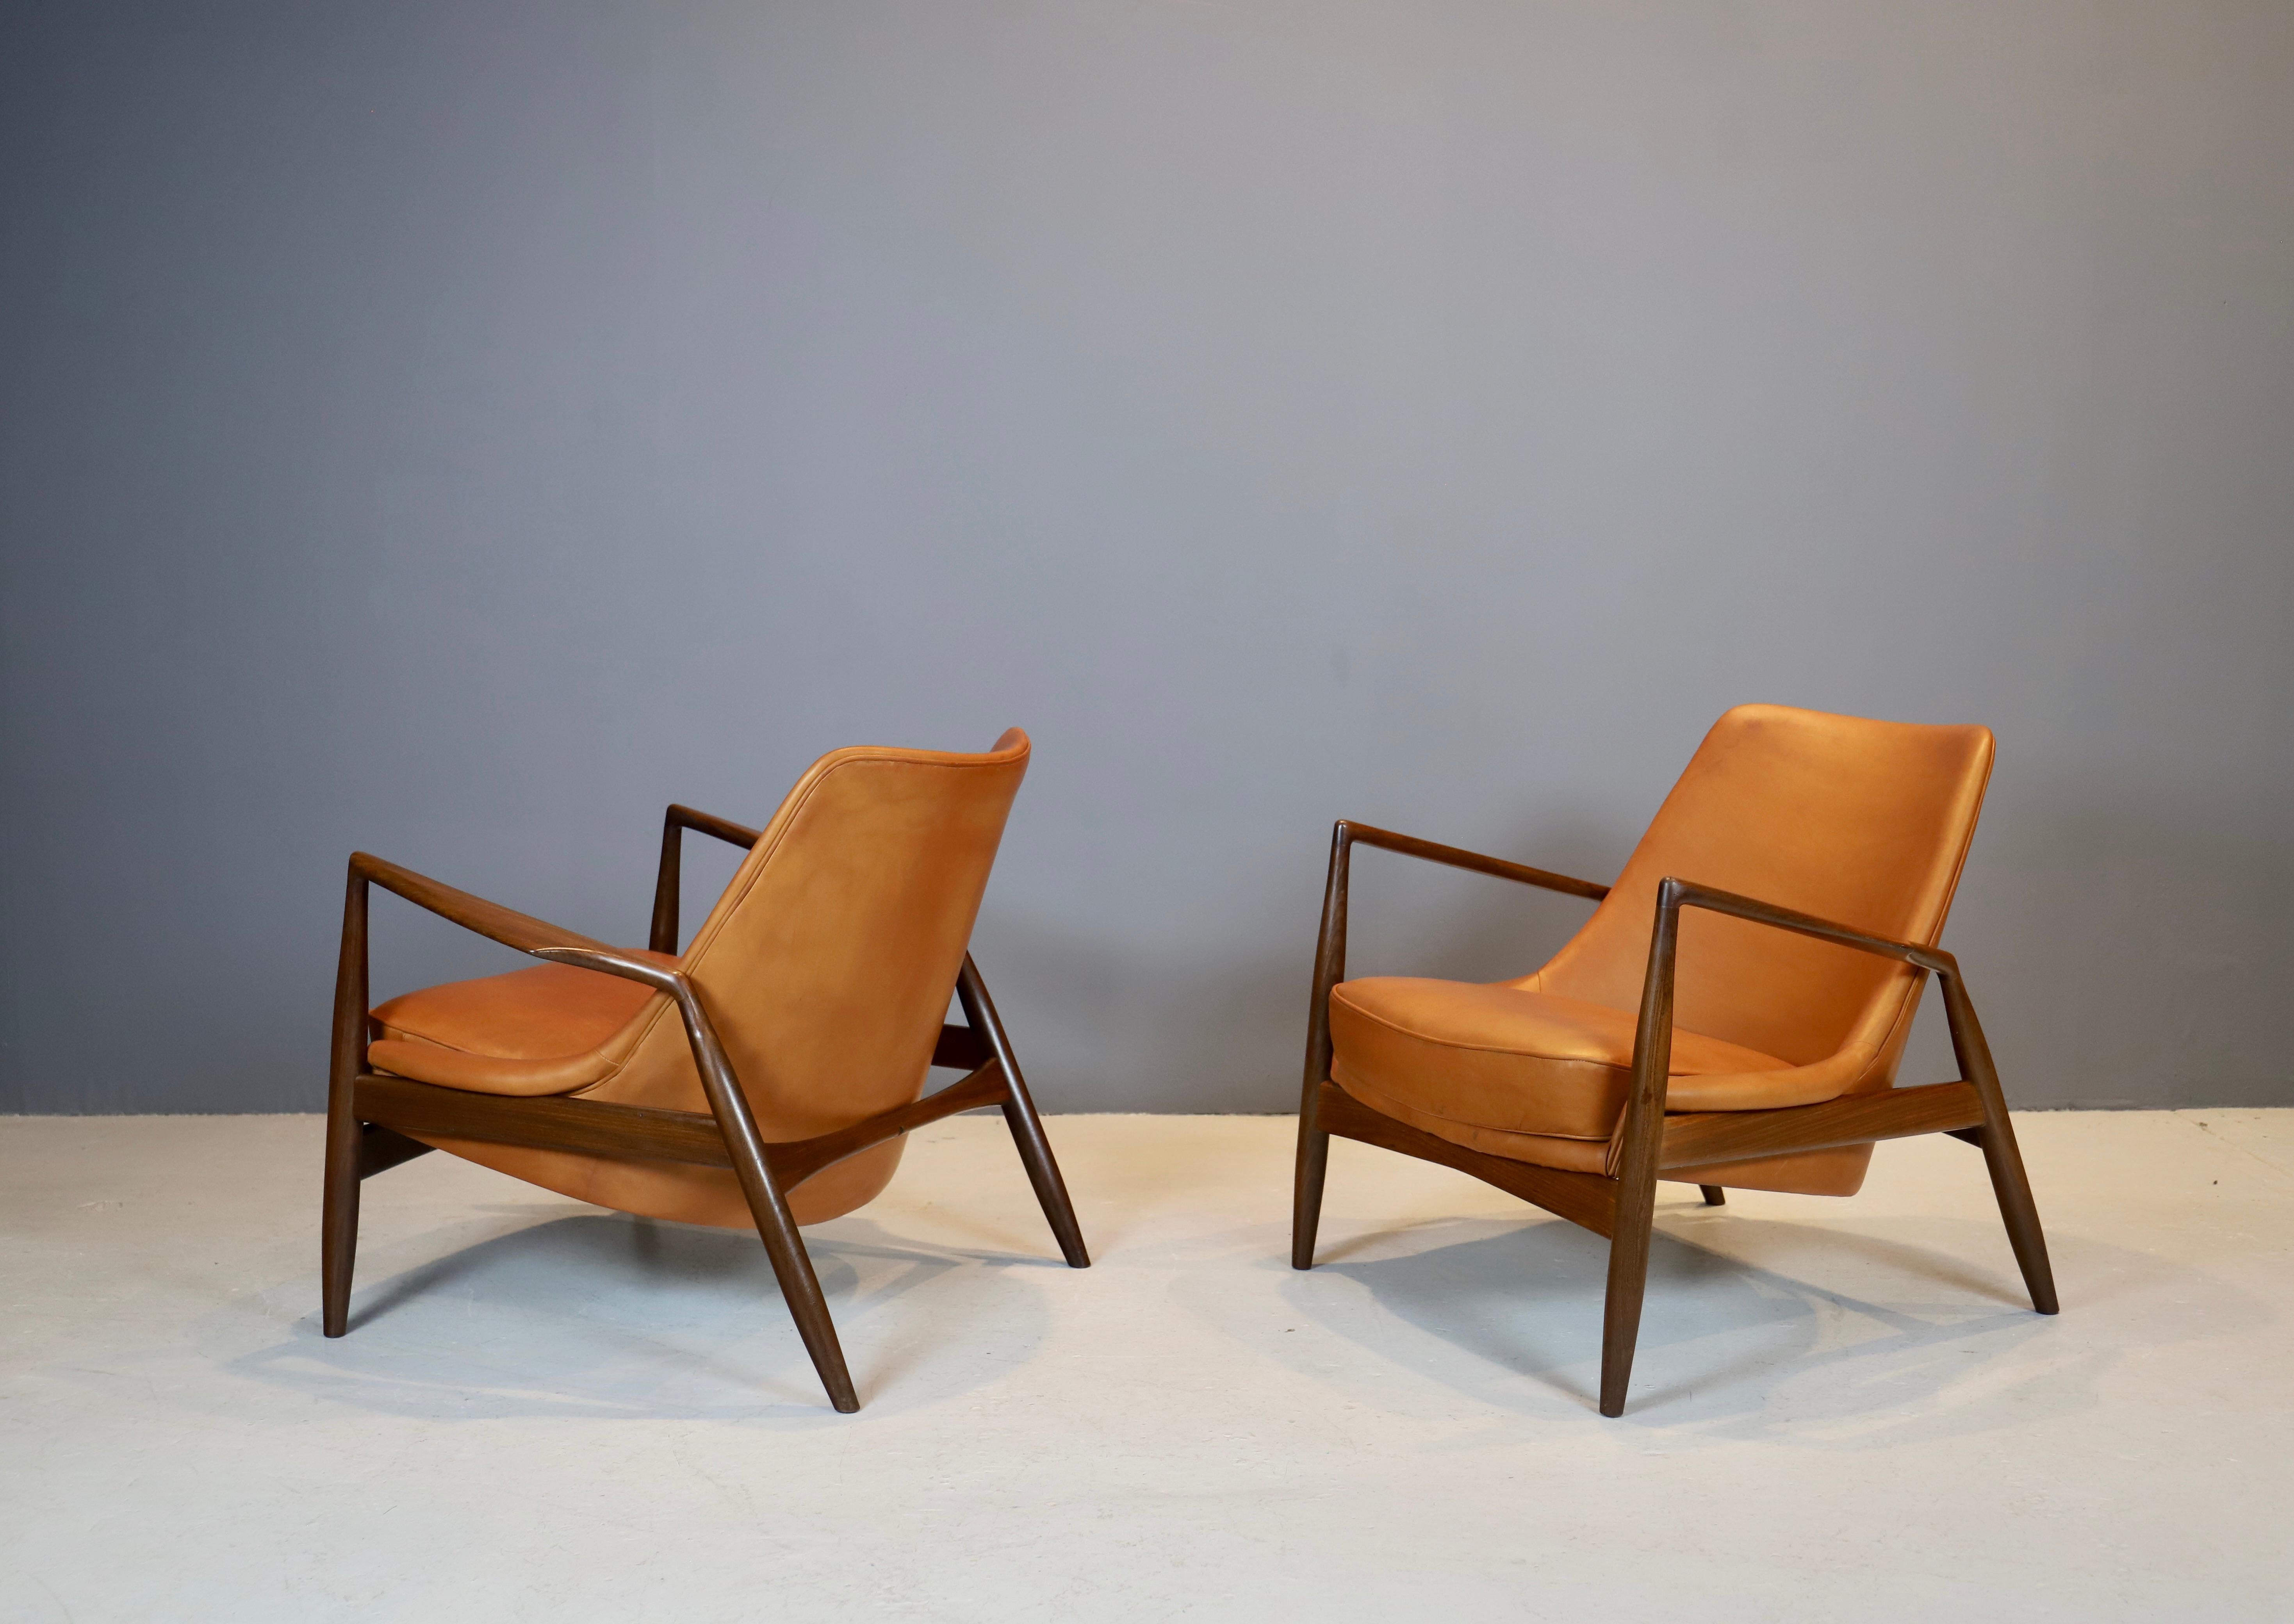 Swedish Ib Kofod-Larsen, Seal Chairs in Afromosia Wood, 1956